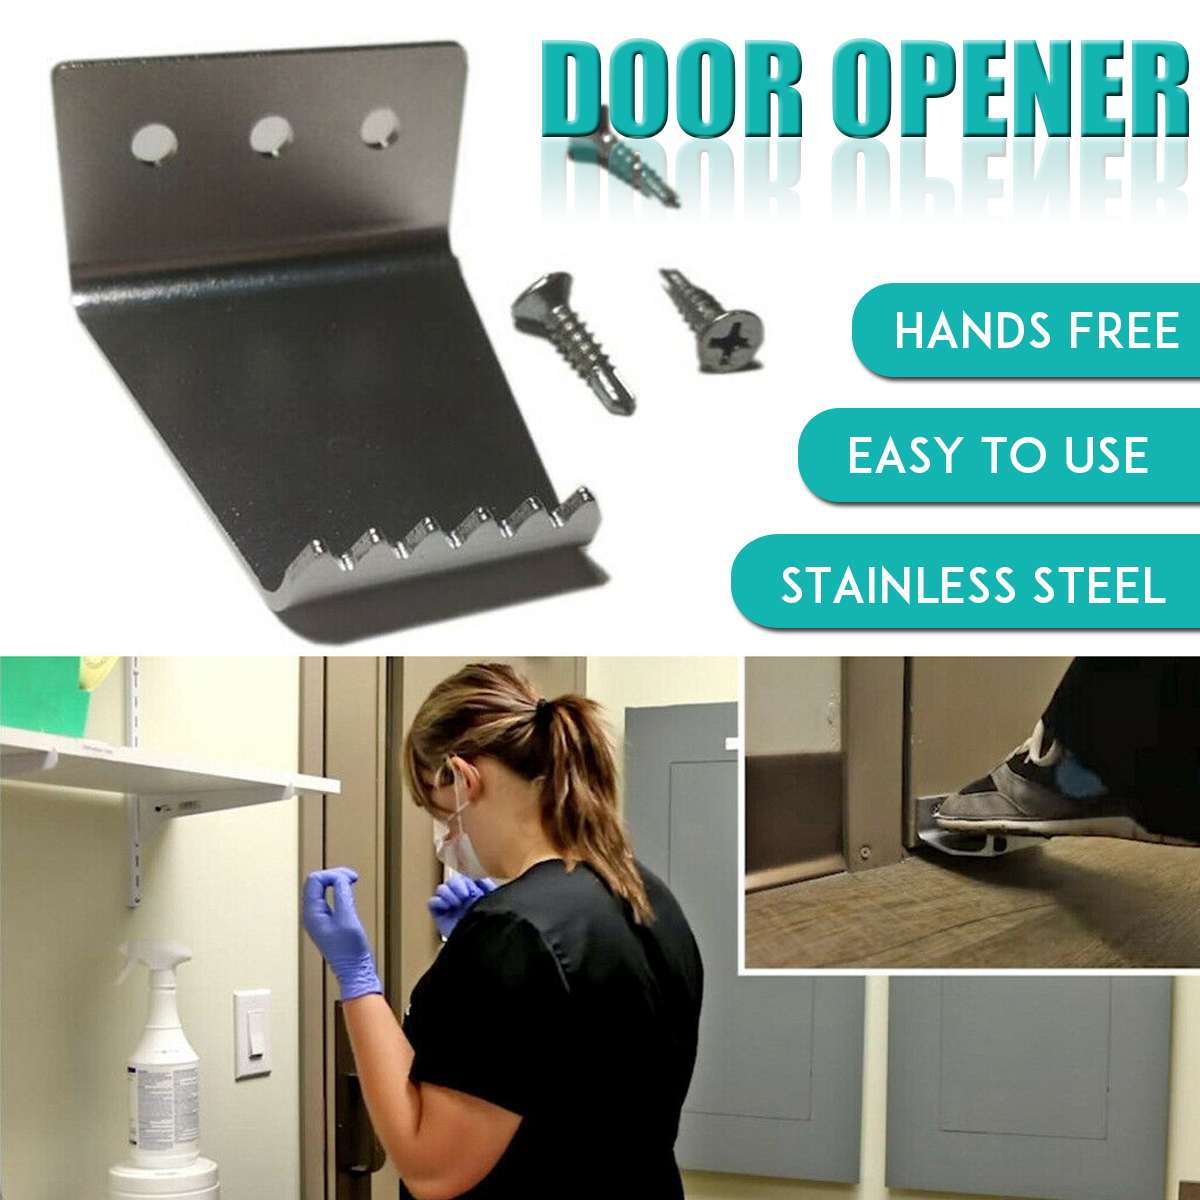 Touchless Foot Door Opener Hands Free Handle Bracket Thick Metal Home Bathroom Office Convenience Hands Free Door Opener